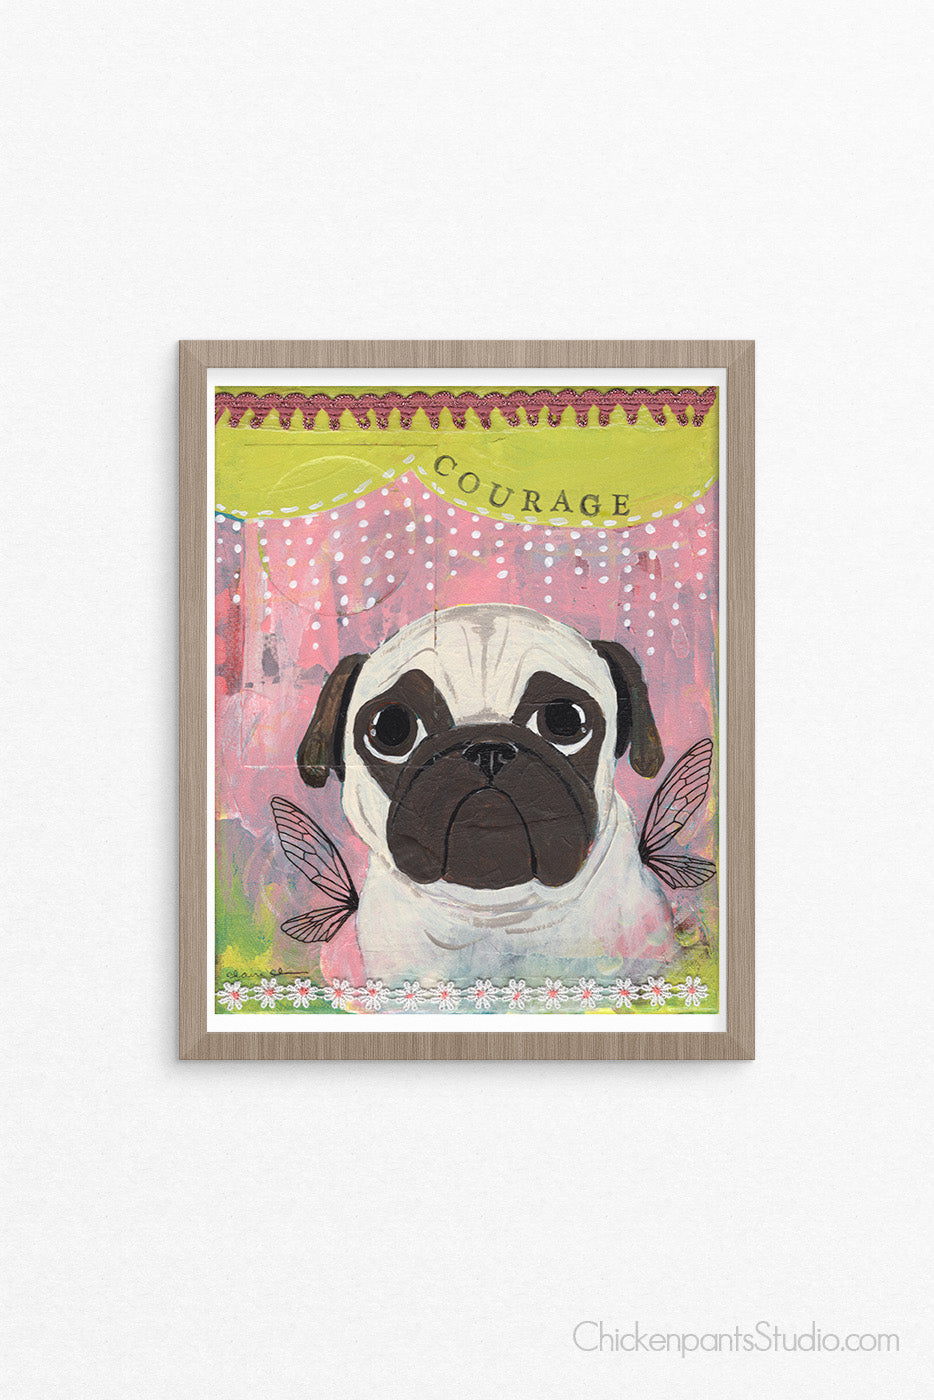 Courage -  Pug Art Print